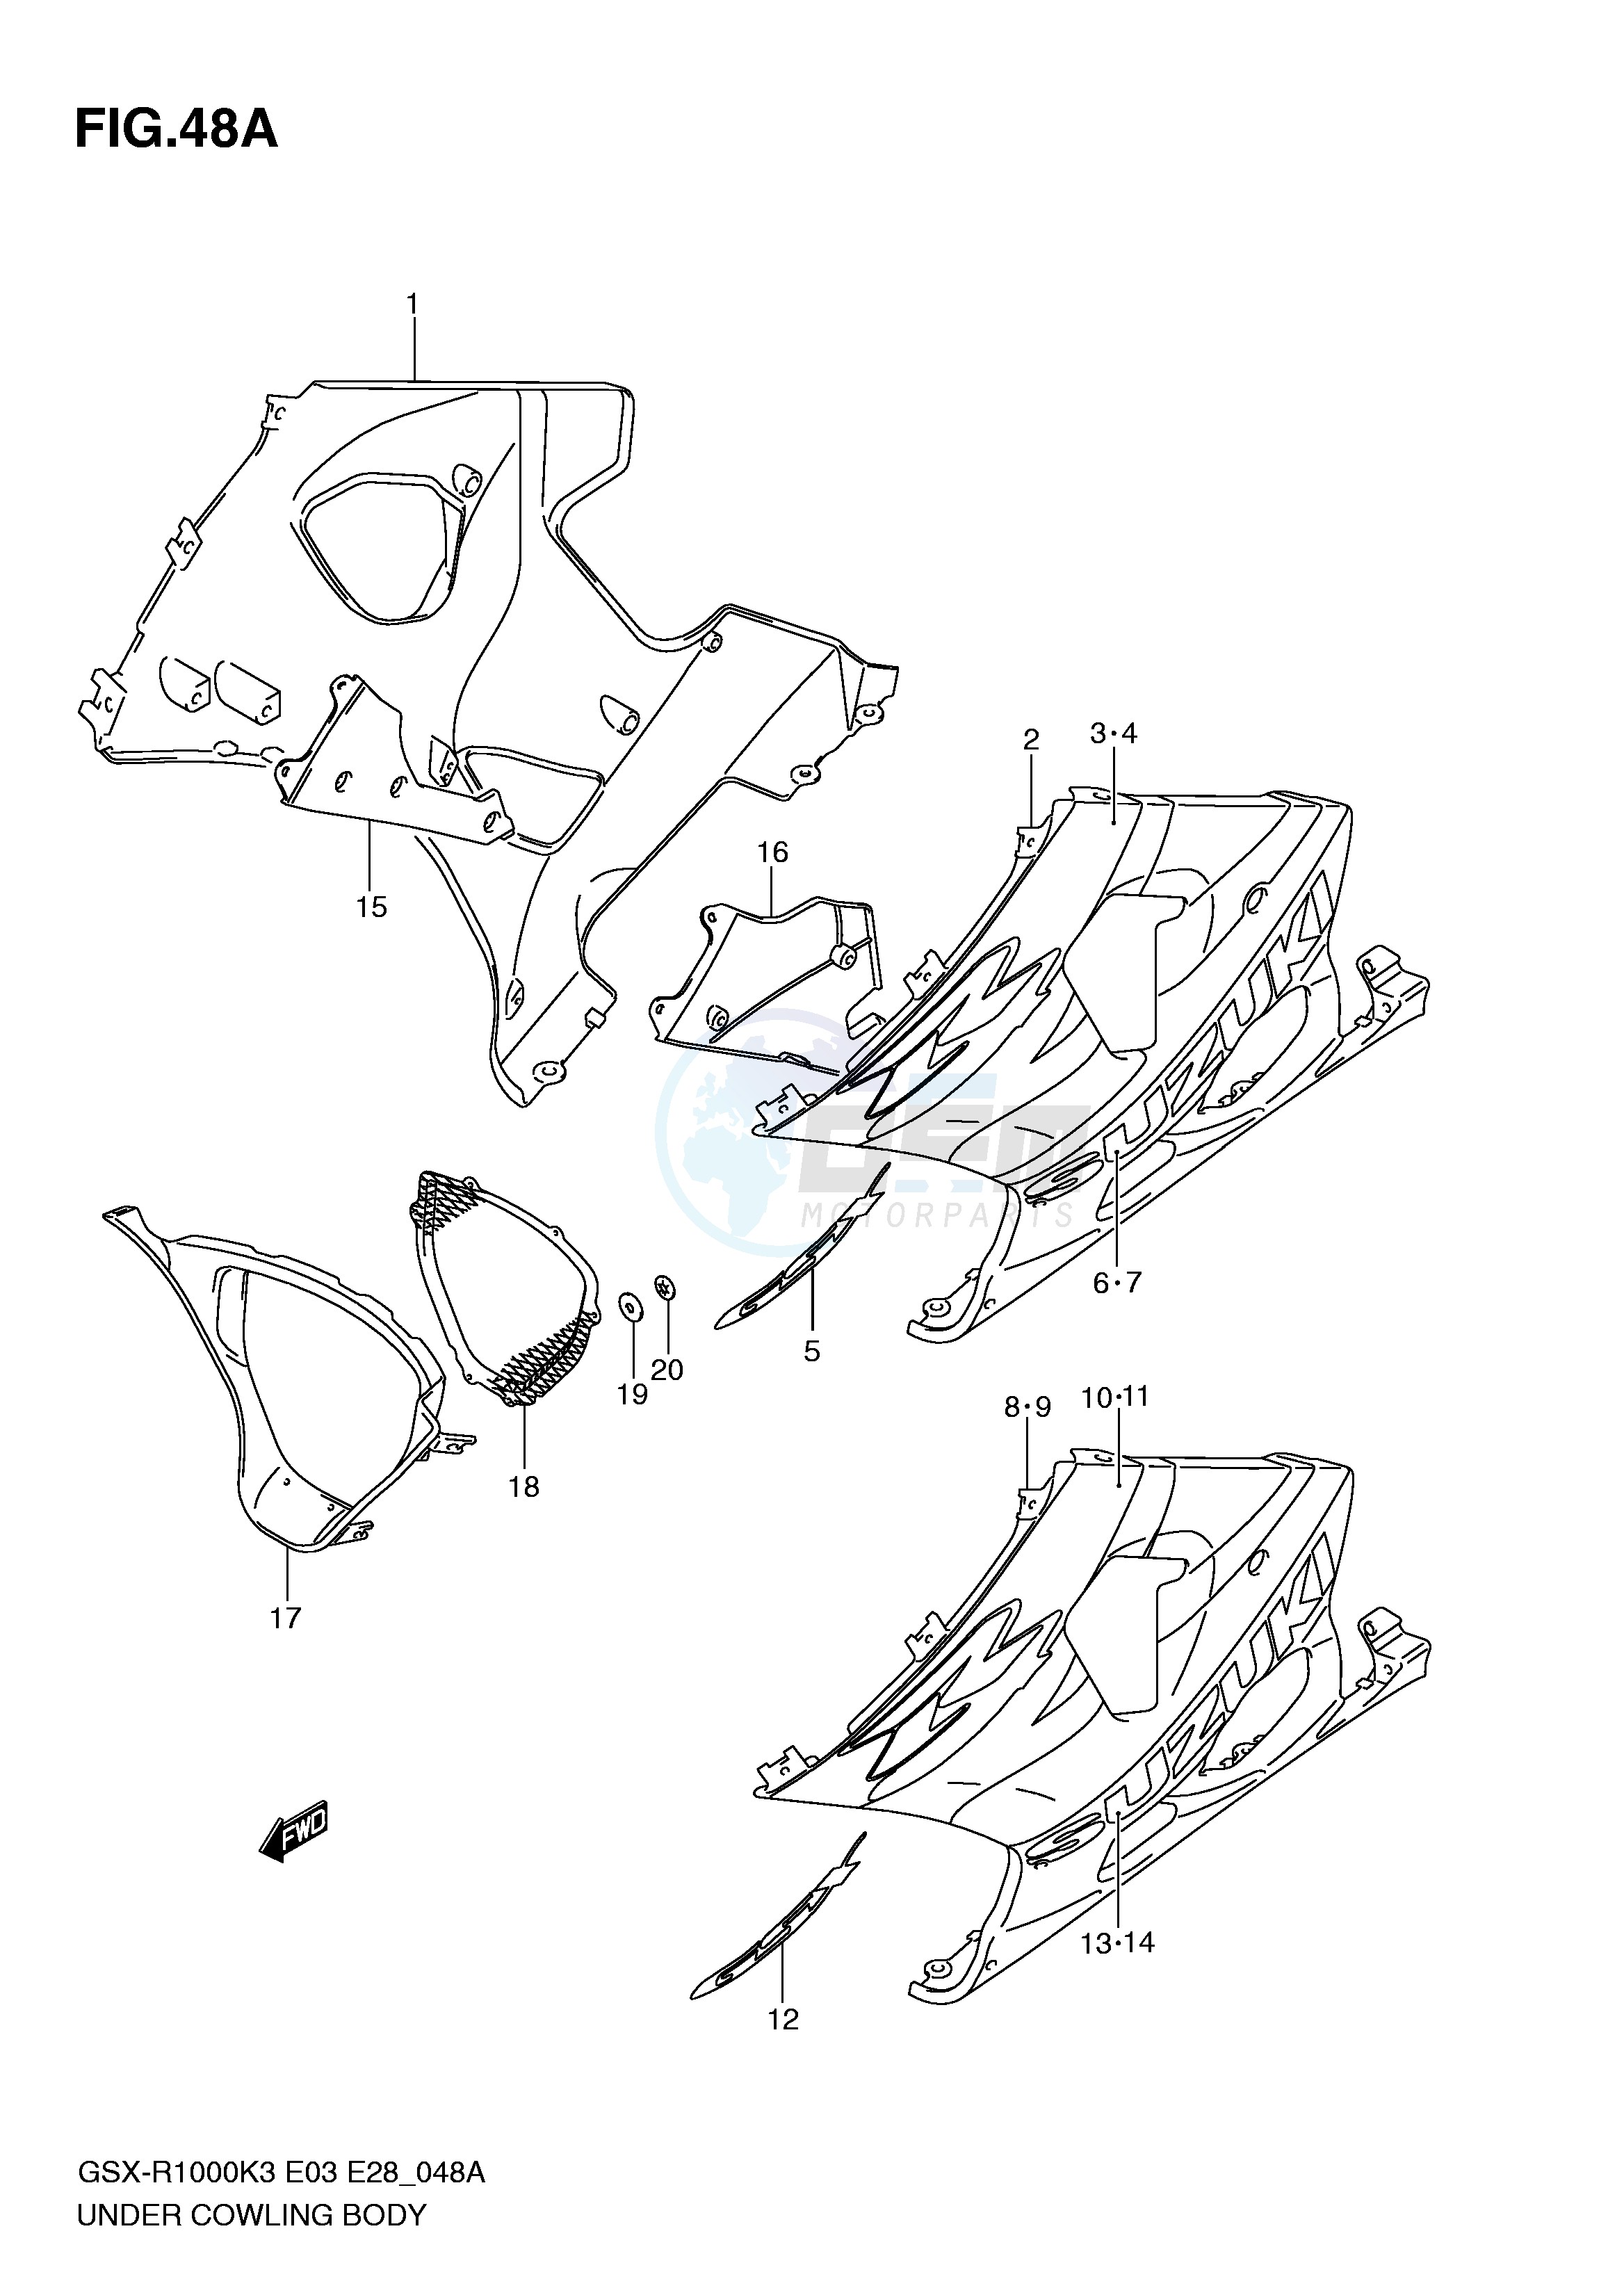 UNDER COWLING (GSX-R1000K4) blueprint